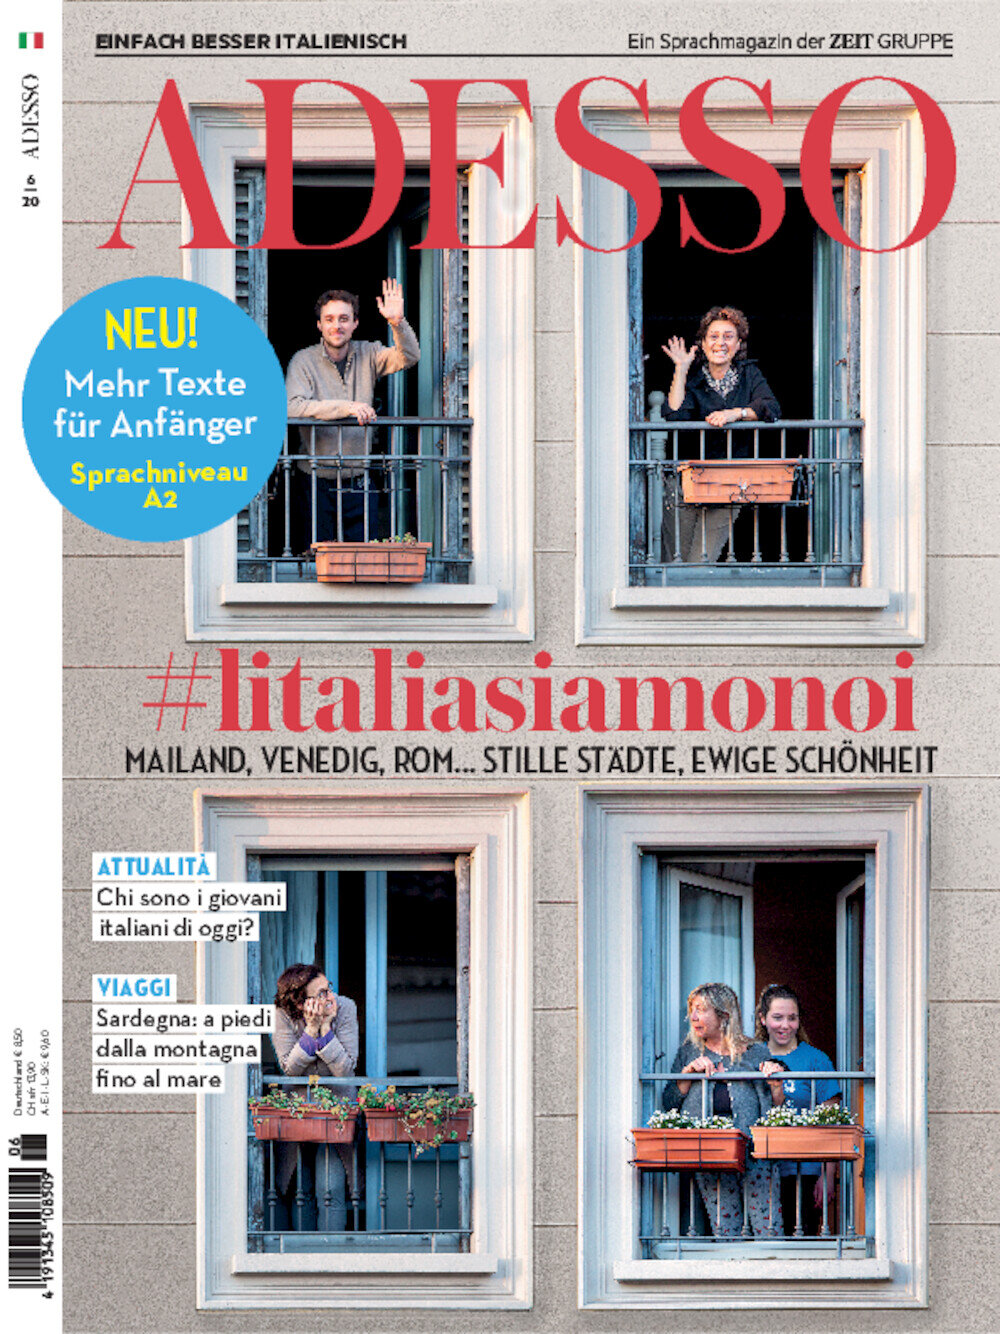 ADESSO eMagazine 06/2020